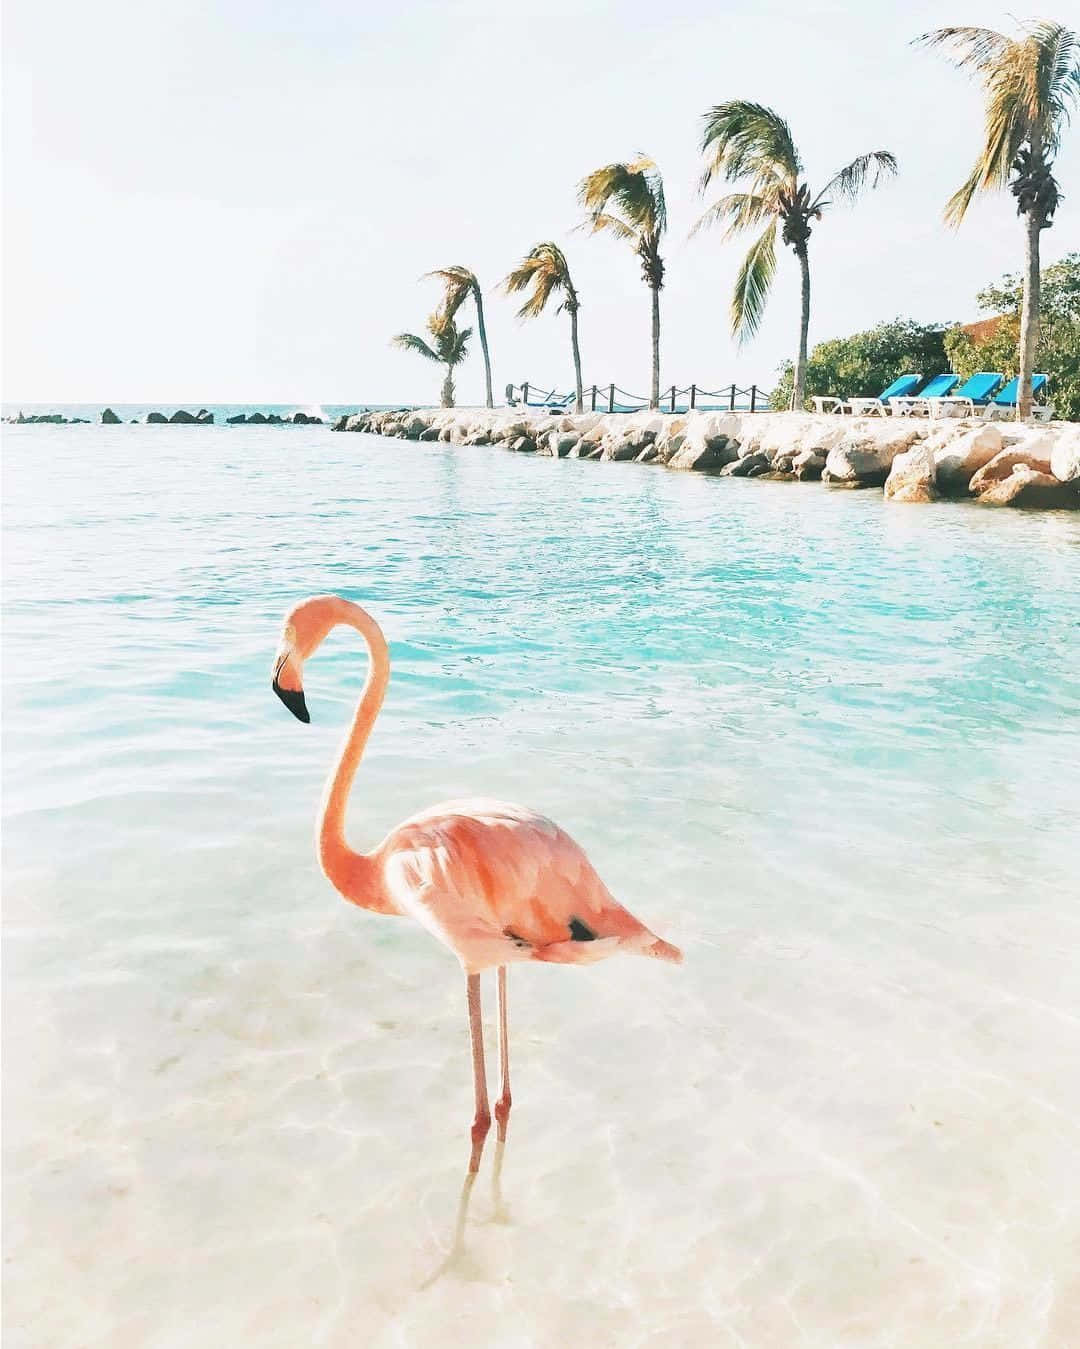 Imagemde Um Belo Flamingo Rosa Em Seu Habitat Natural.